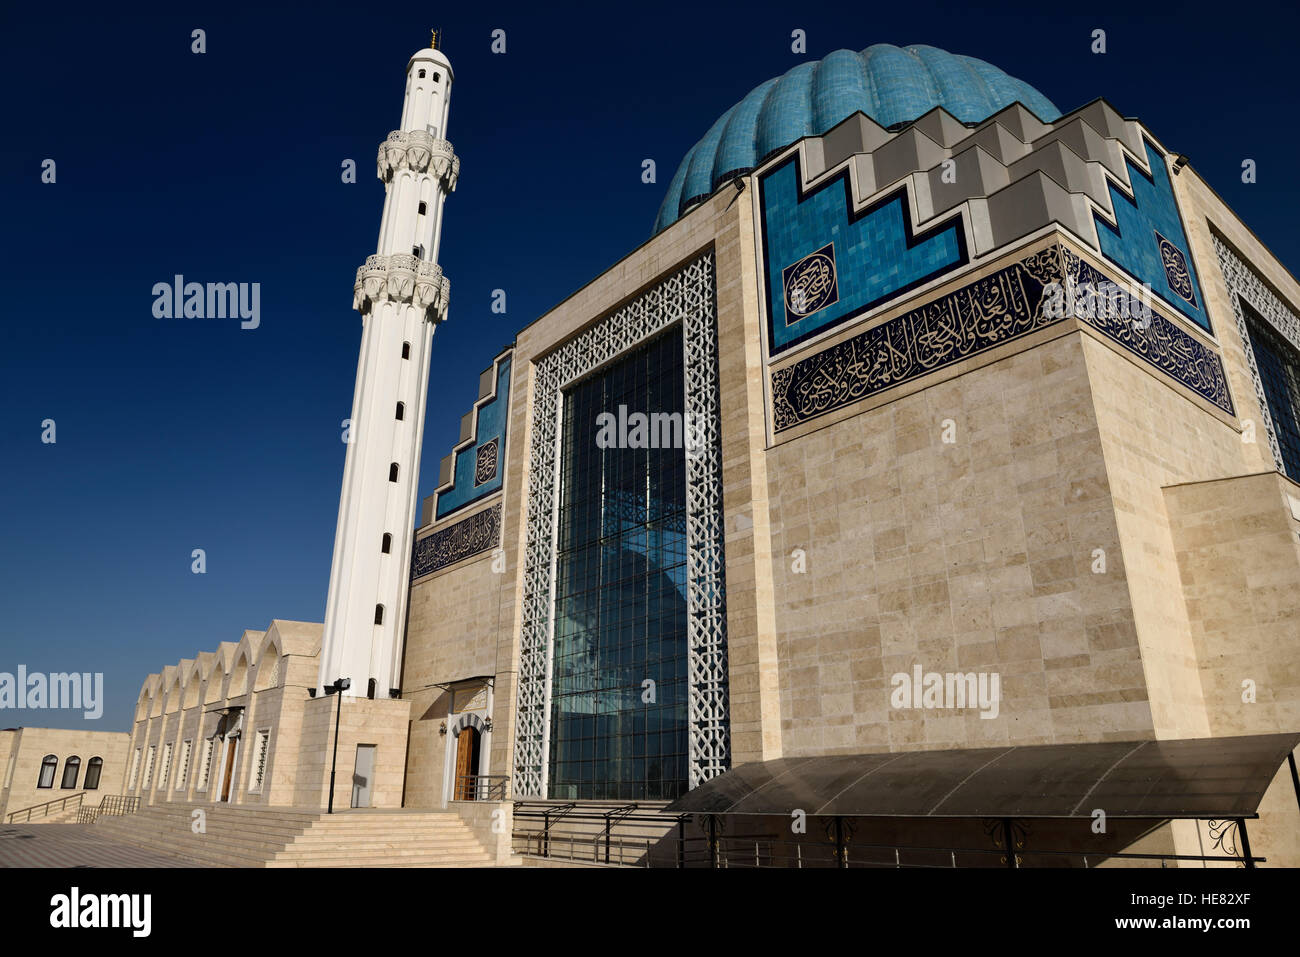 Ciel bleu et blanc minaret de hoca ahmet yesevi moderne mosquée de Turkestan Kazakhstan Banque D'Images